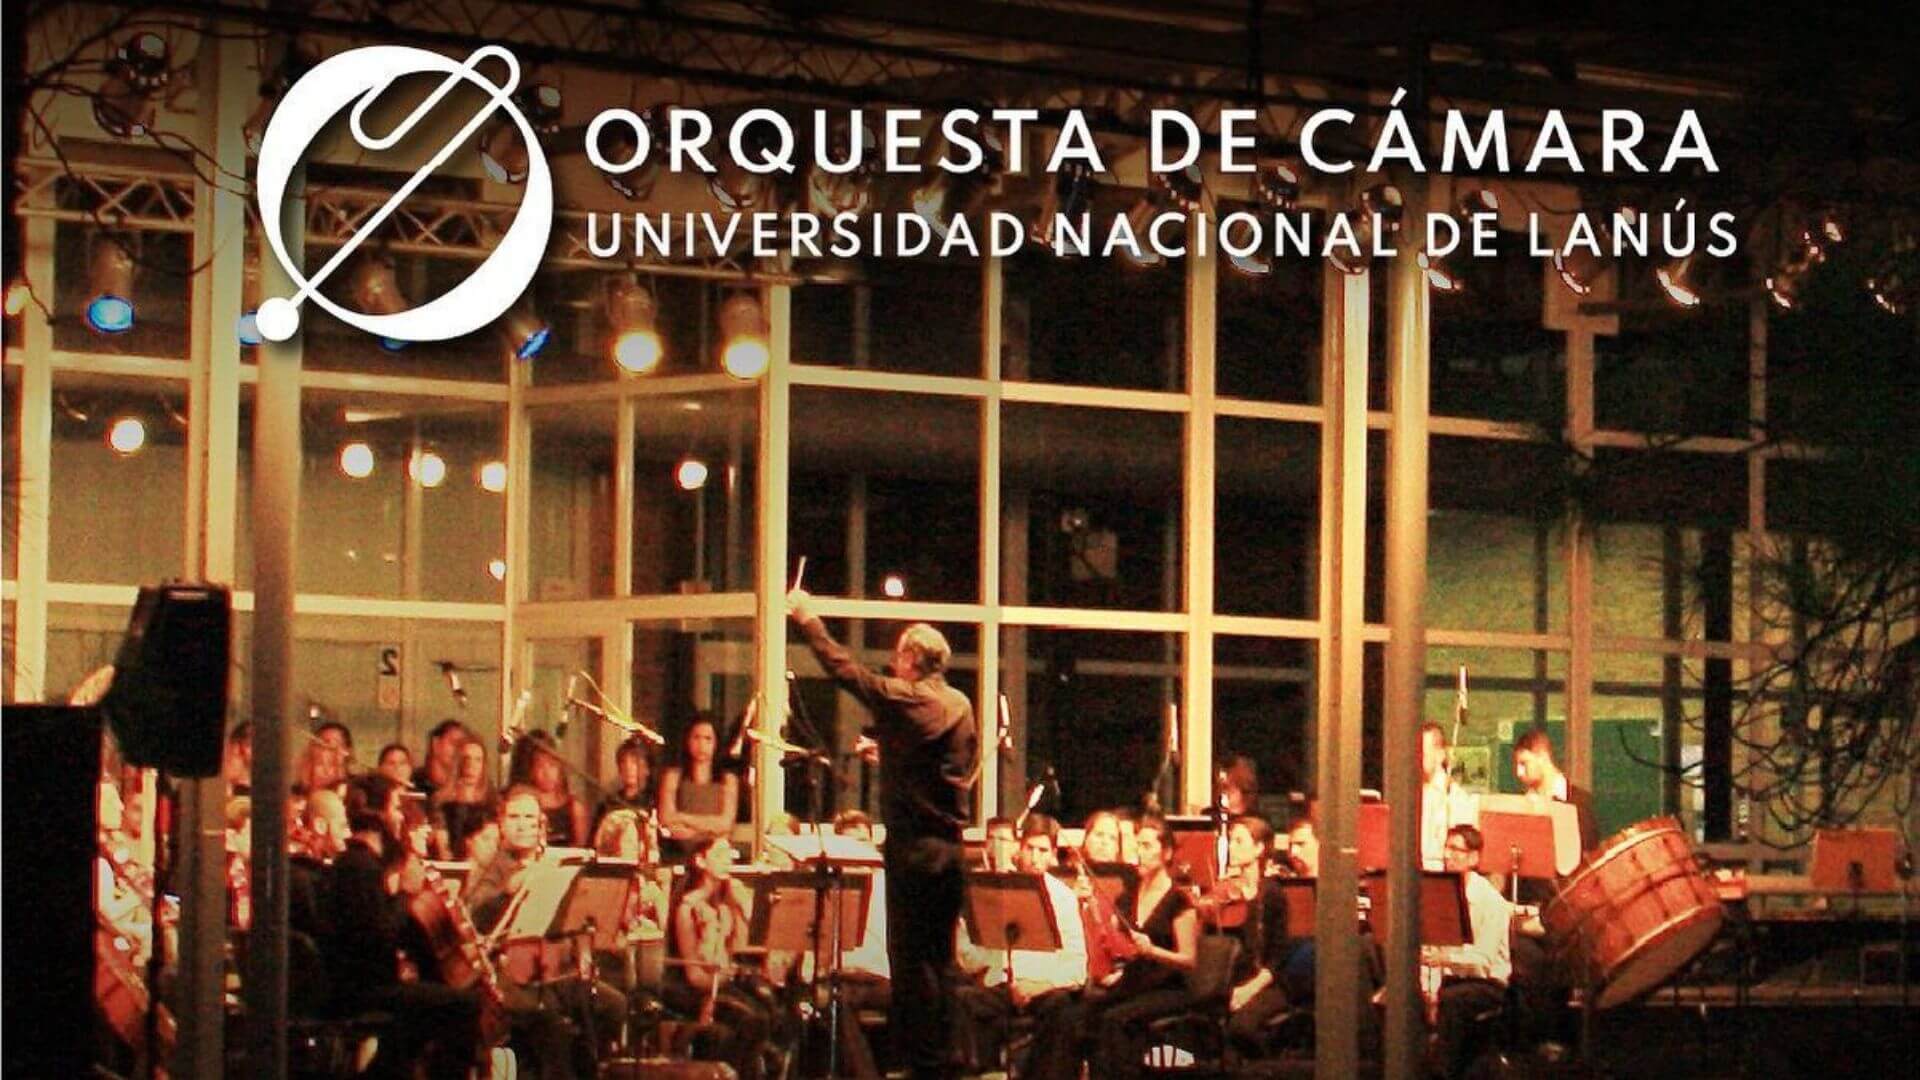 Orquesta de cámara de la Universidad de Lanús